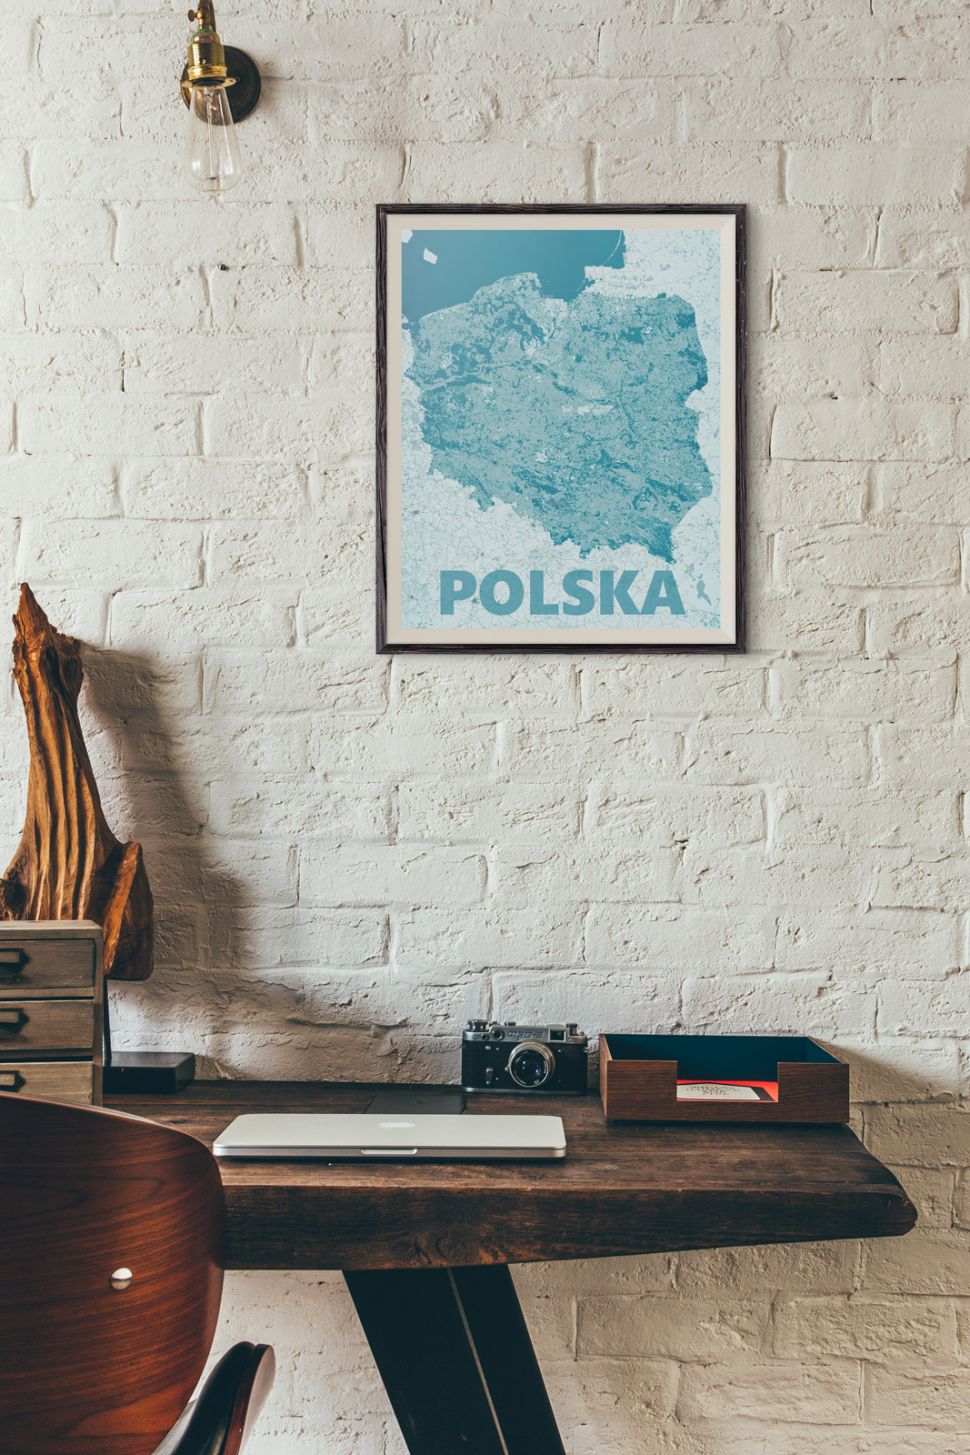 wnętrze z mapą polski oprawioną w ramkę 50x70 cm wiszącą na ścianie